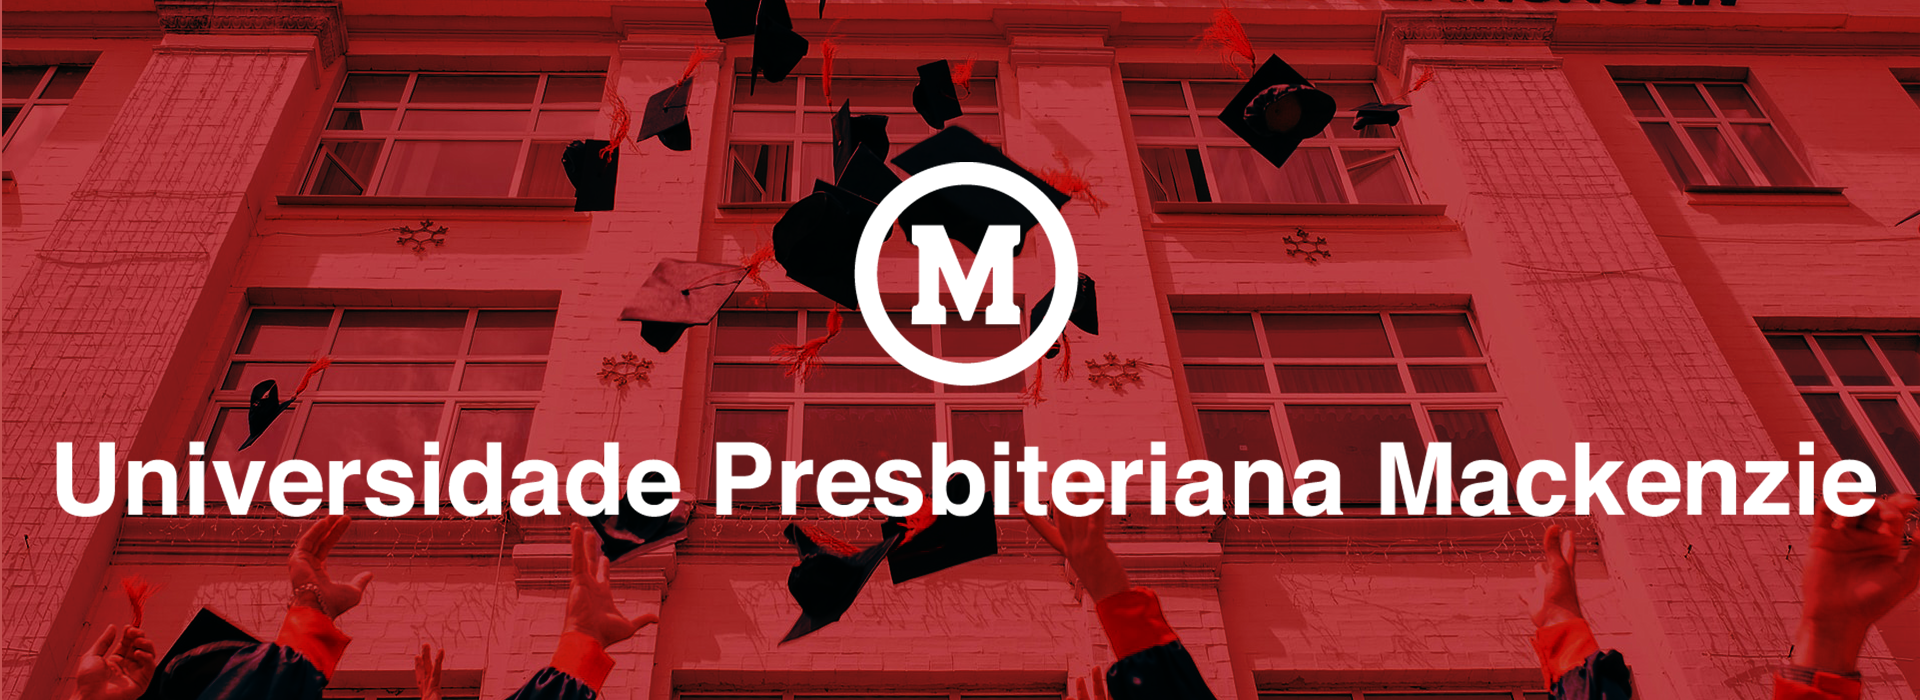 Torneio de Xadrez agita Universidade Presbiteriana Mackenzie